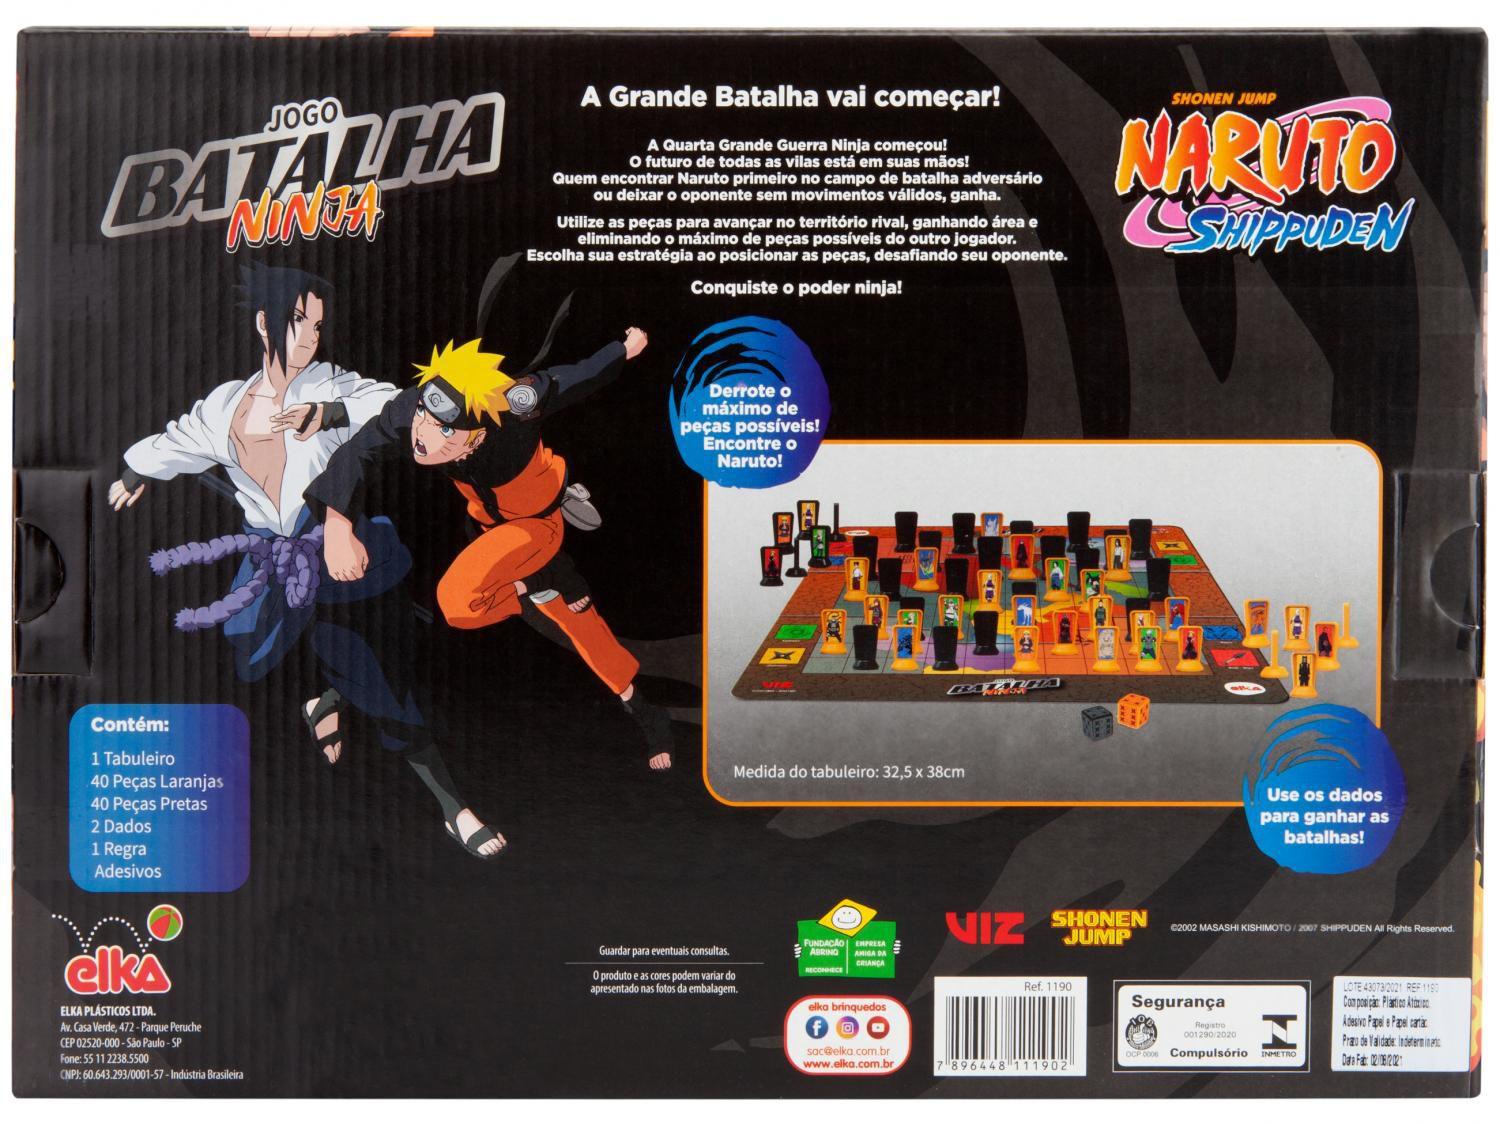 Jogo Batalha Ninja - Naruto Shippuden, Elka, Colorido, Multicor